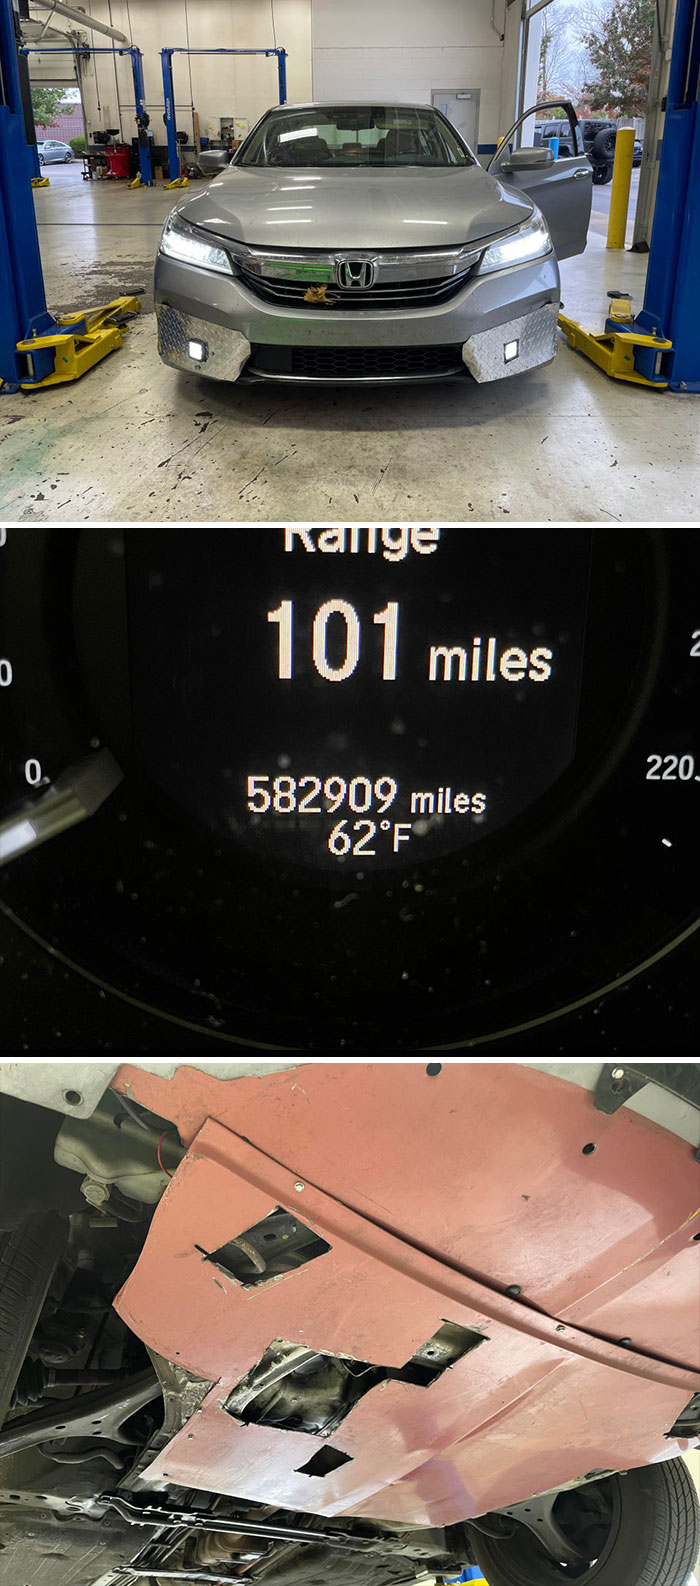 Cerca de 600 mil millas (965 mil kilómetros). Honda Accord Hybrid de 2017. Llegó hoy... Eso es un nuevo récord en nuestro taller. Muy personalizado... Único en su clase